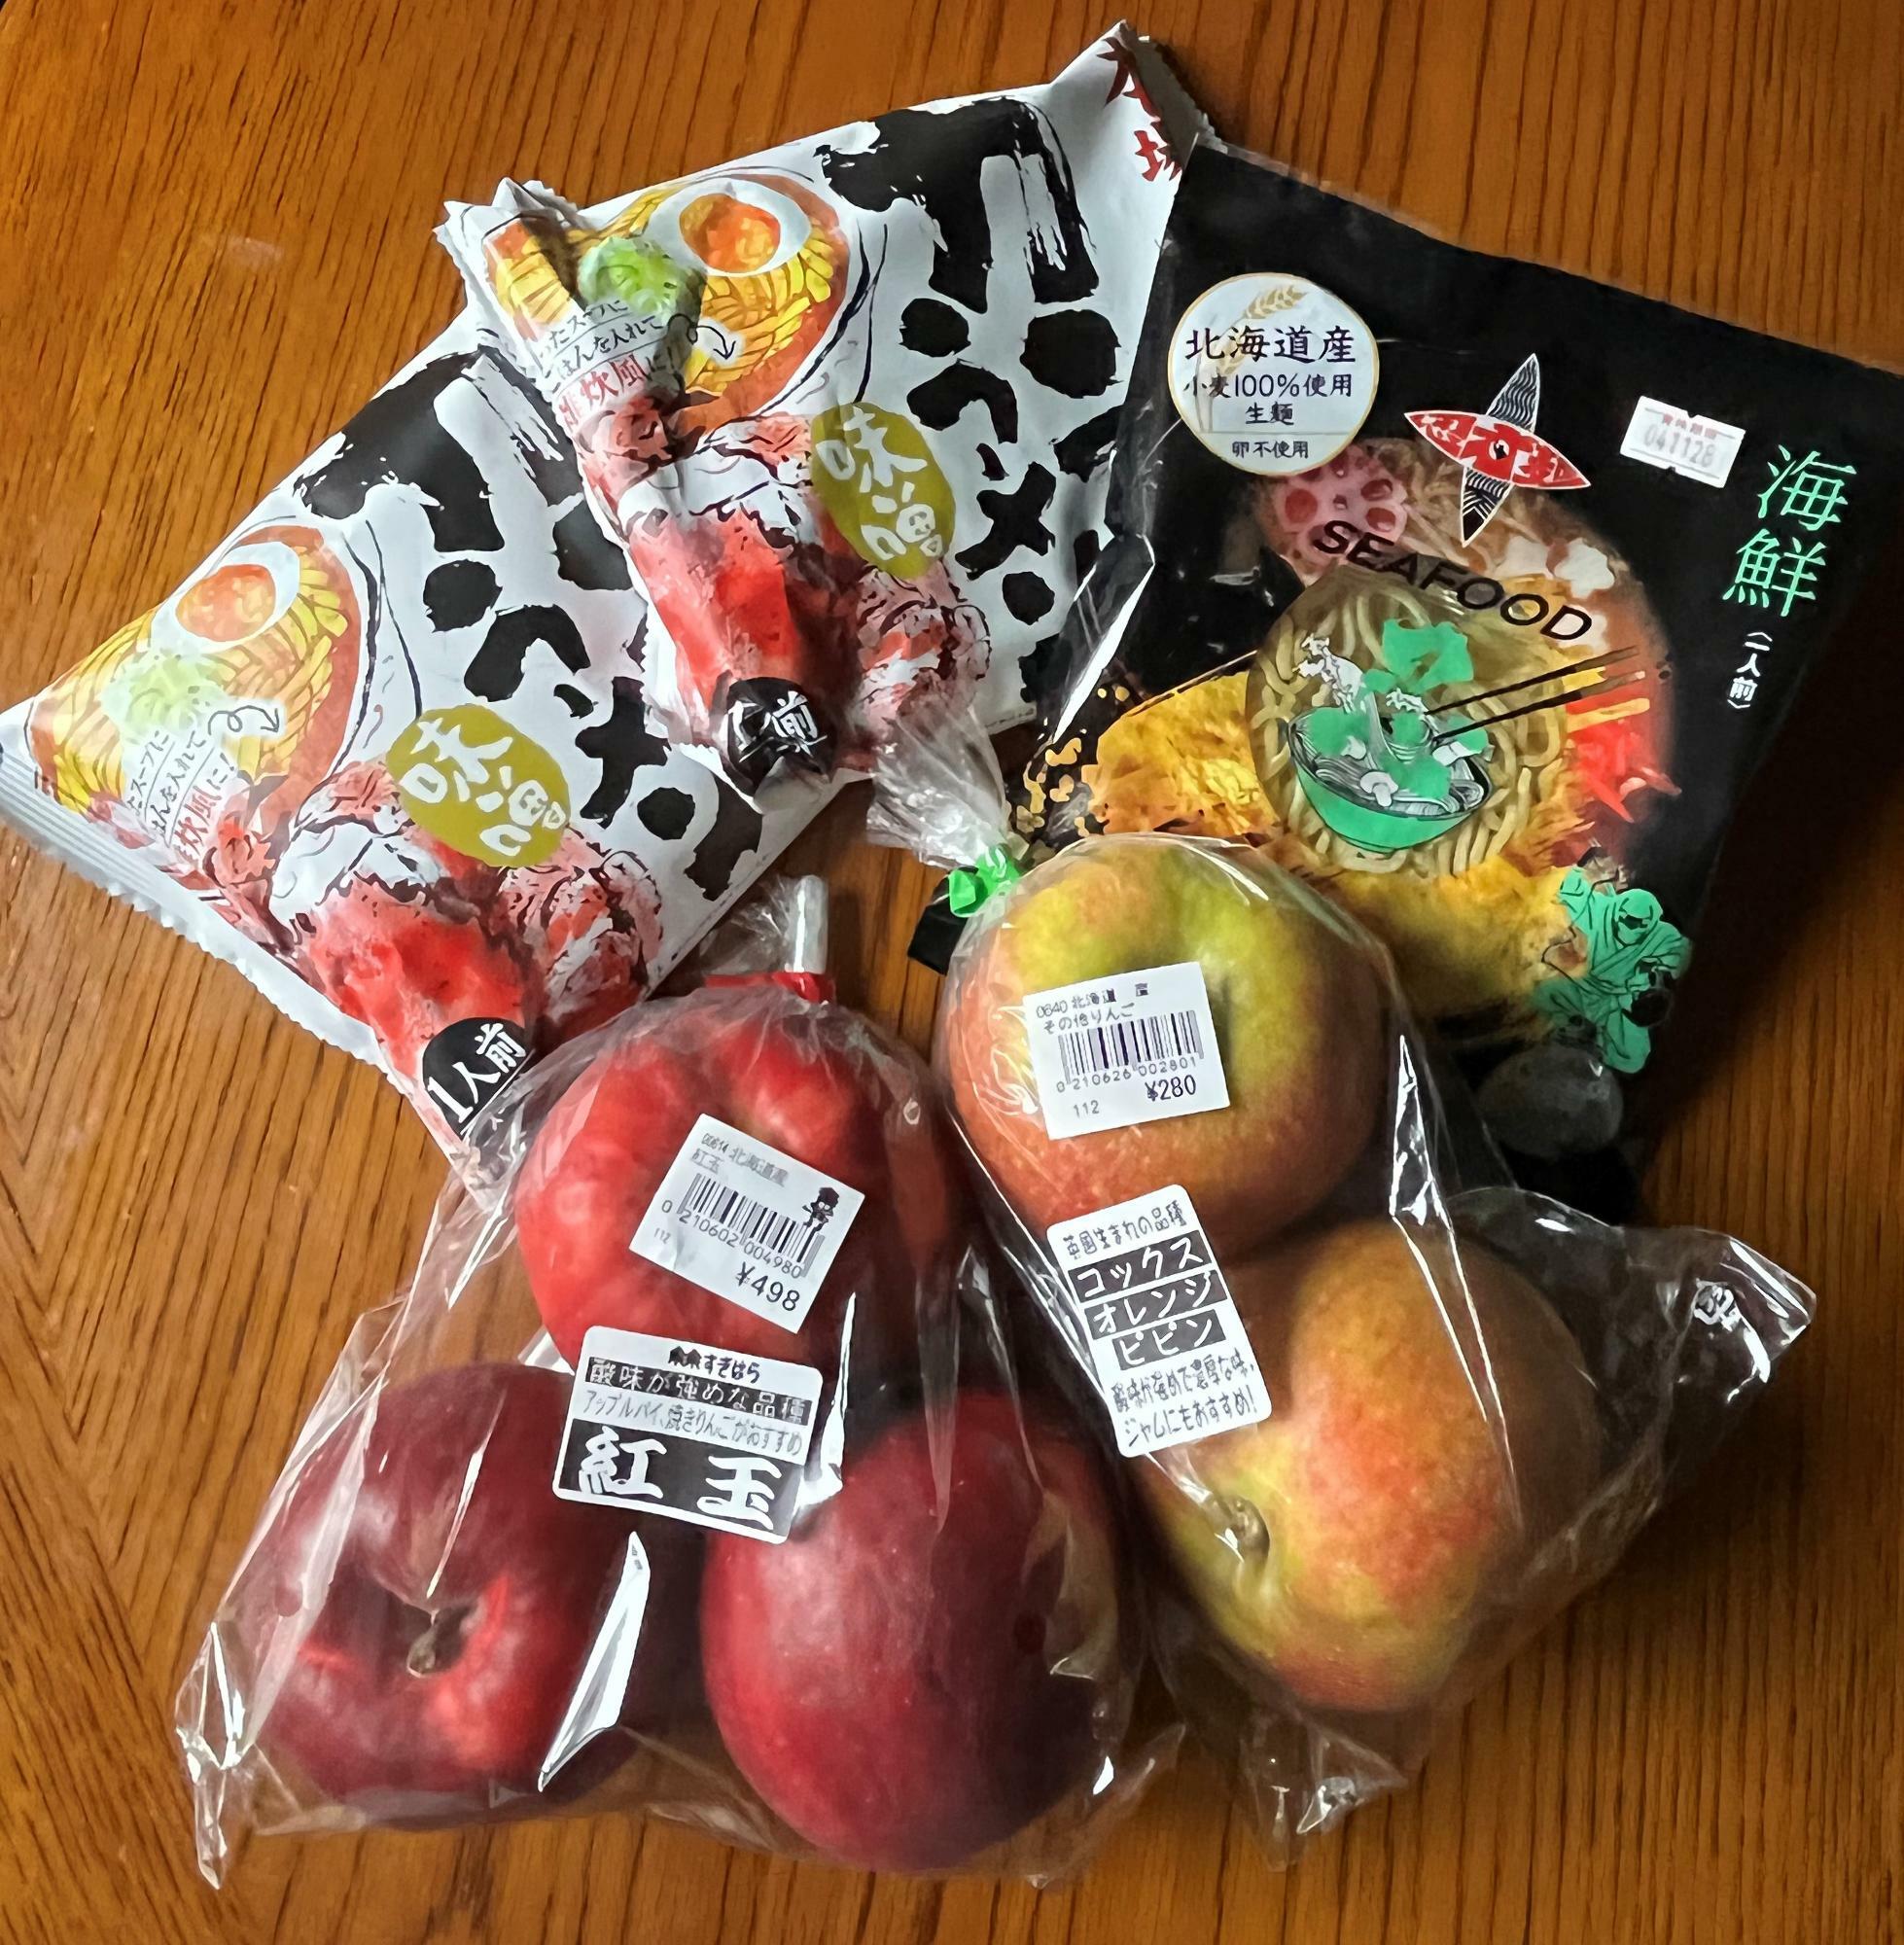 リンゴは英国生まれの「コックスオレンジピピン」とアップルパイなどに適している「紅玉」。右のラーメンは前から気になっていた「NINJAMEN」。カニラーメンは東京出張の手土産に！